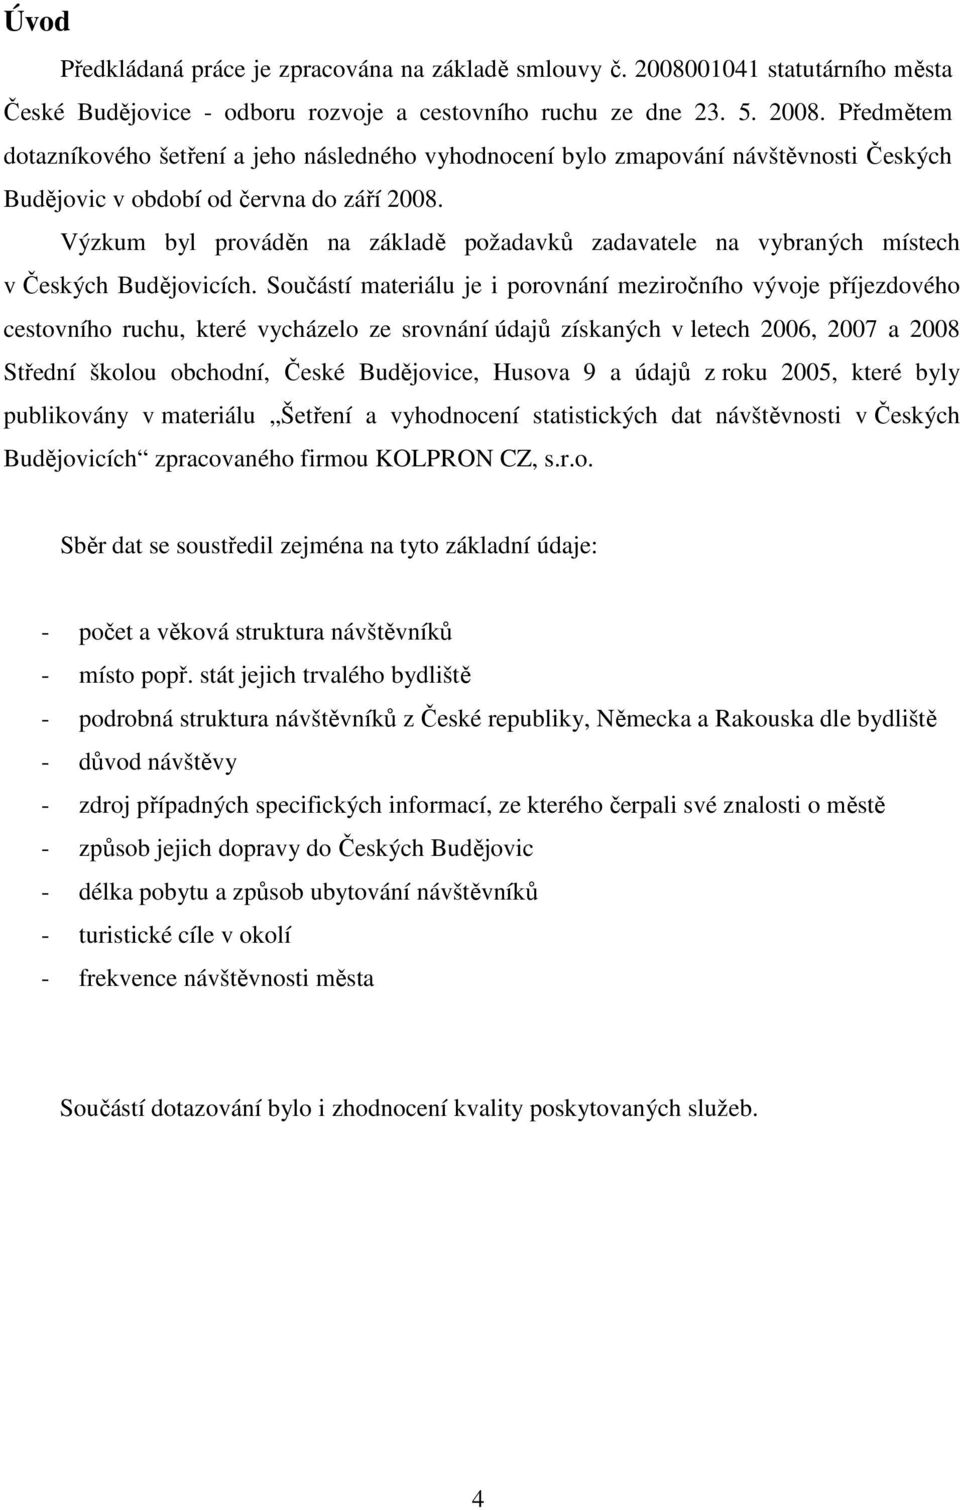 Předmětem dotazníkového šetření a jeho následného vyhodnocení bylo zmapování návštěvnosti Českých Budějovic v období od června do září 2008.